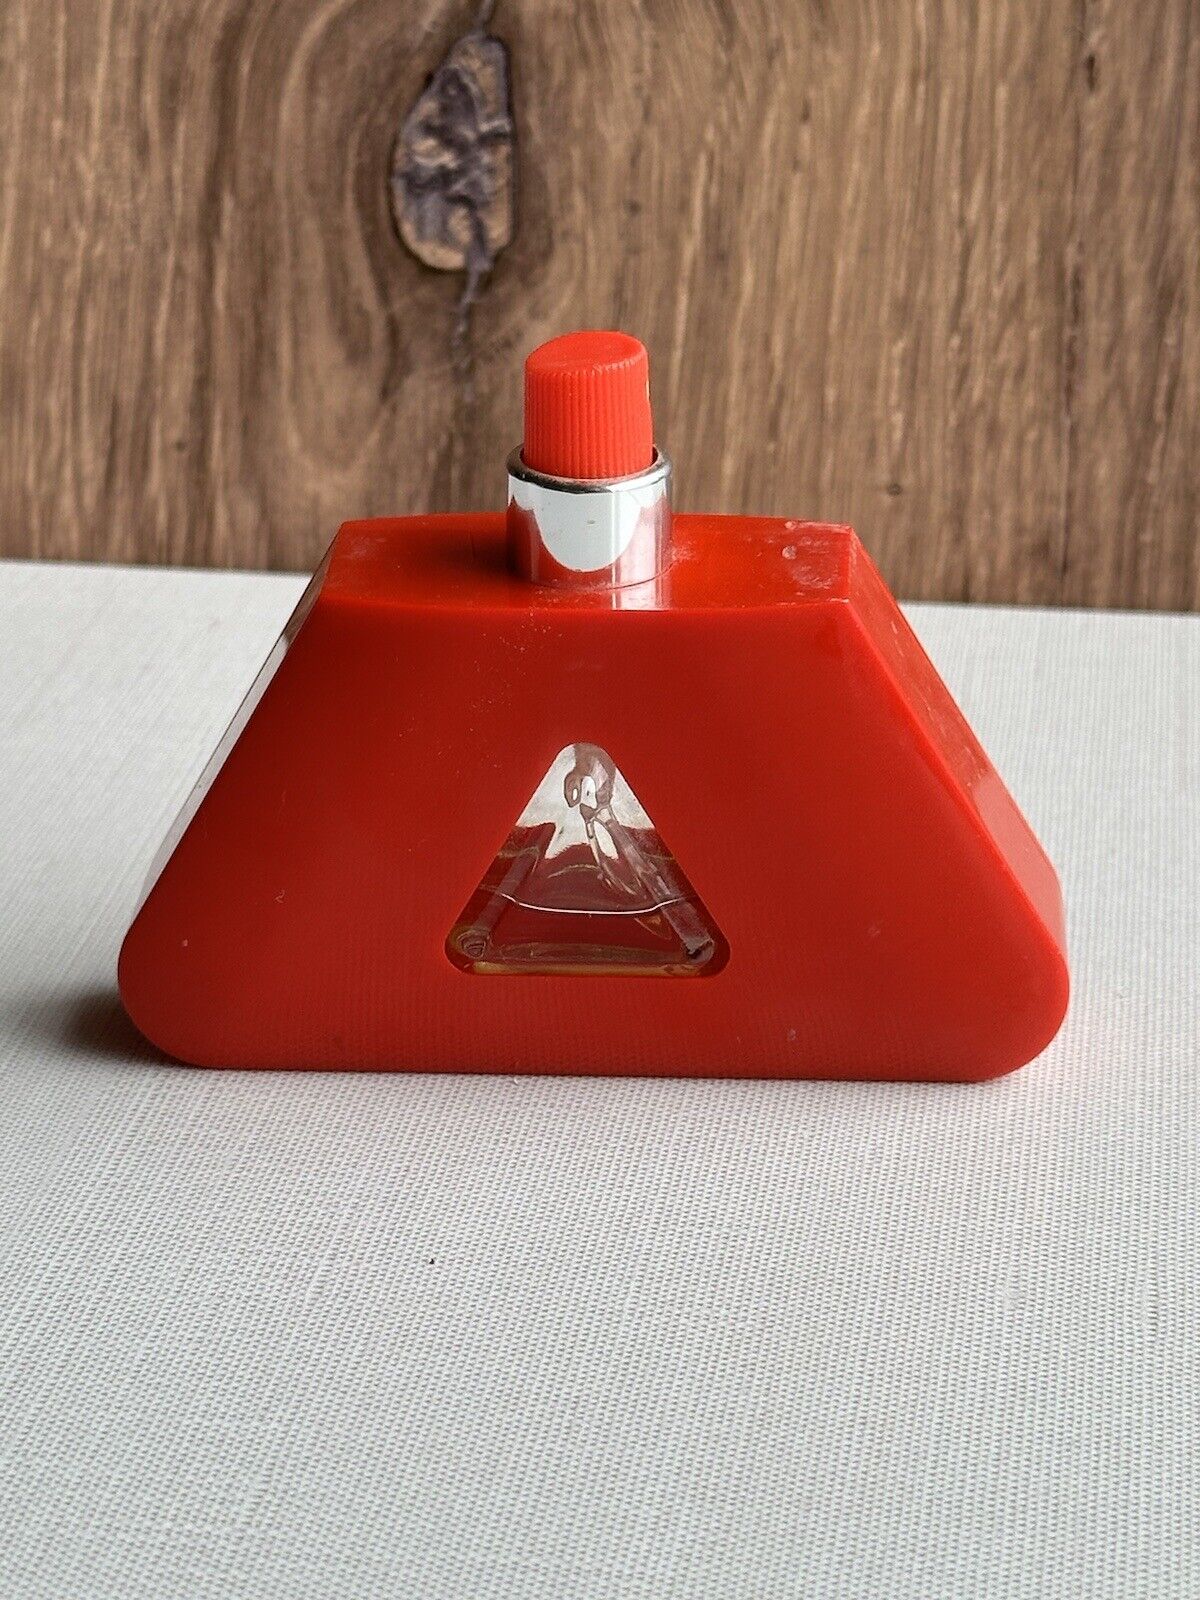 LIZ CLAIBORNE 1FL oz Eau De Toilette Spray  Appr 30% Full Vintage Red